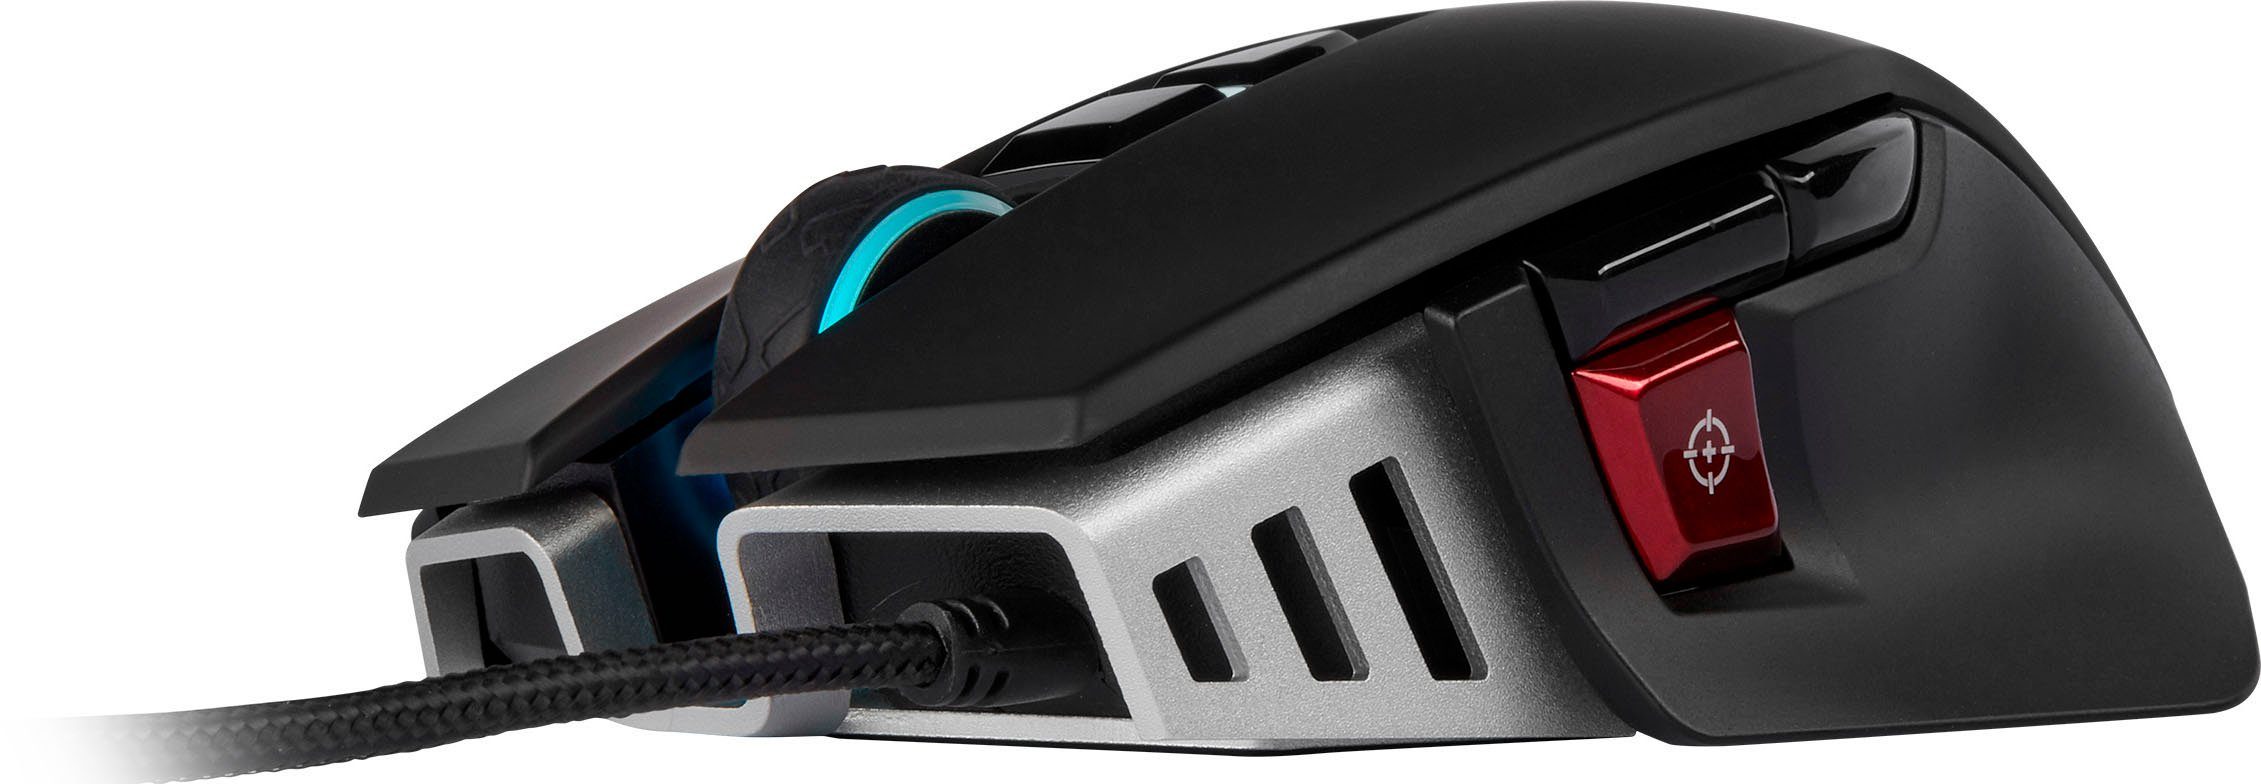 Corsair M65 RGB Gaming-Maus (kabelgebunden) Mouse ELITE Gaming